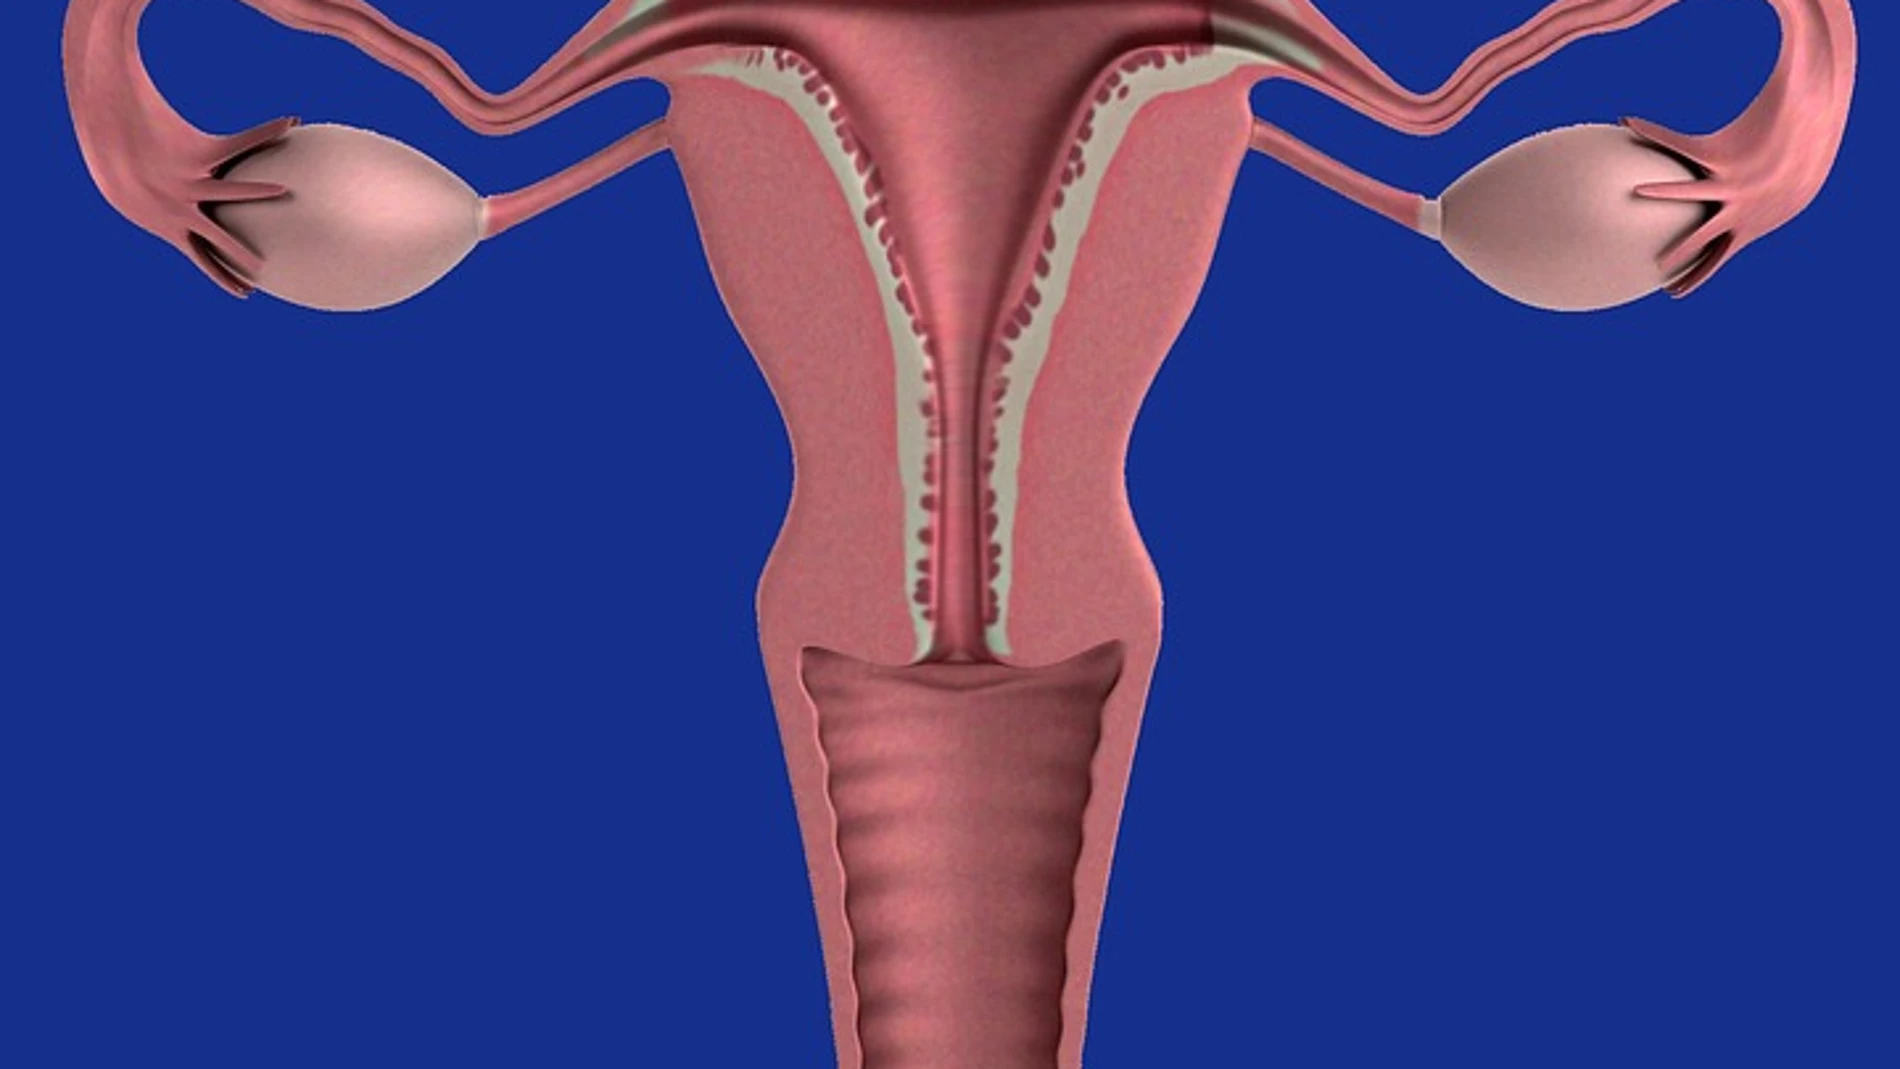 El hiperandrogenismo ovárico funcional, más conocido como síndrome de ovarios poliquísticos (SOP), es un desorden hormonal provocado por una alteración de la función ovárica.